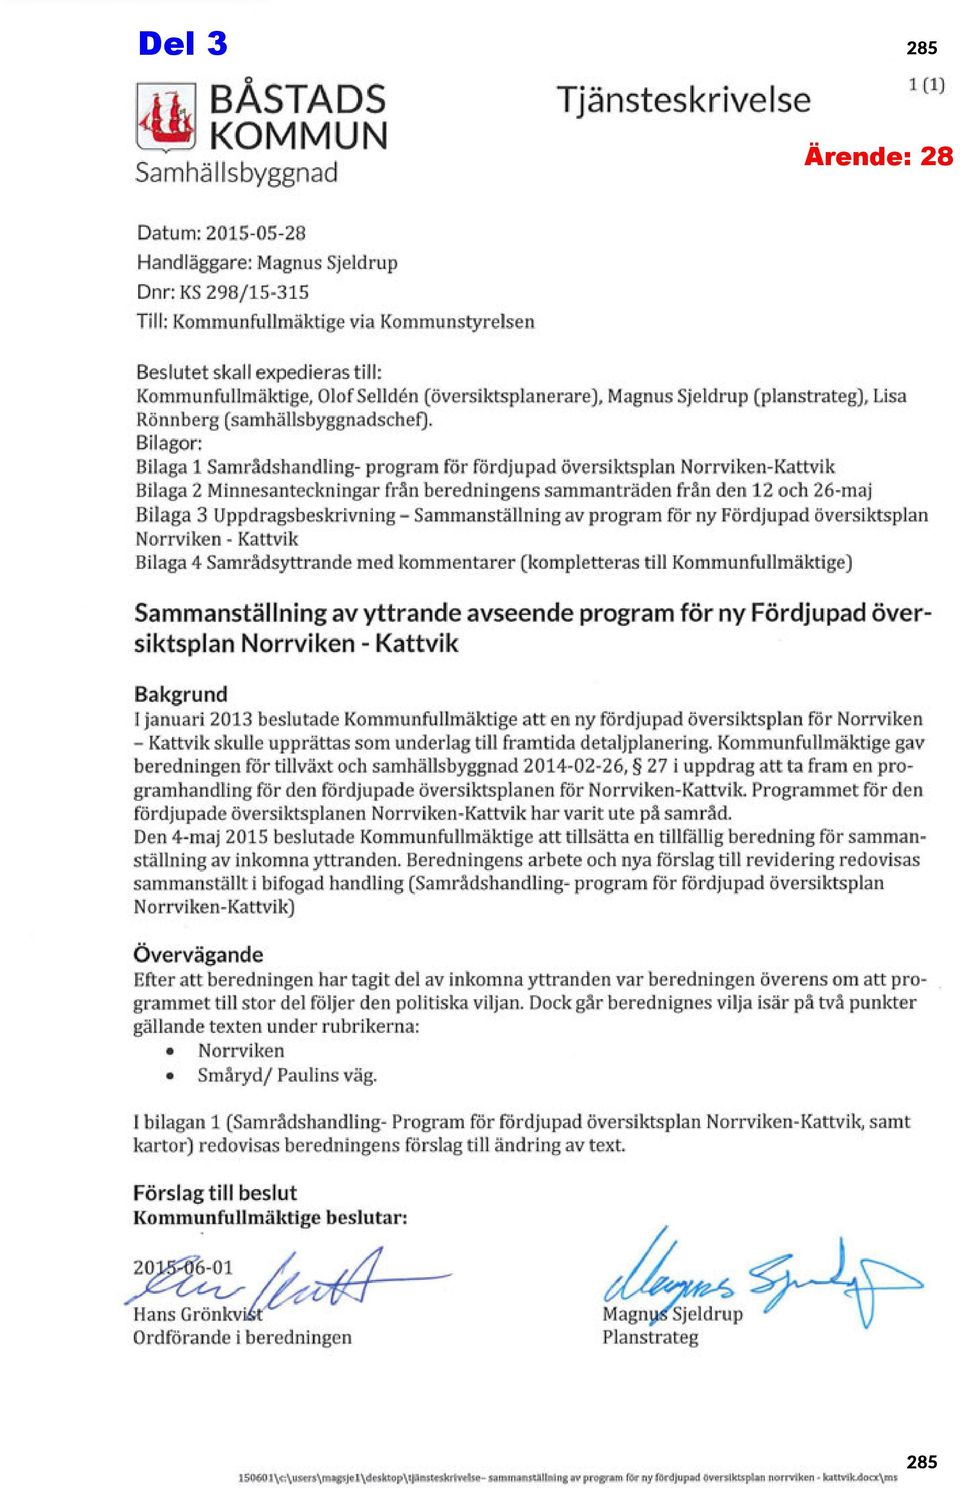 Bilagor: Bilaga 1 Samrådshandling- program för fördjupad översiktsplan Norrviken-Kattvik Bilaga 2 Minnesanteckningar från beredningens sammanträden från den 12 och 26-maj Bilaga 3